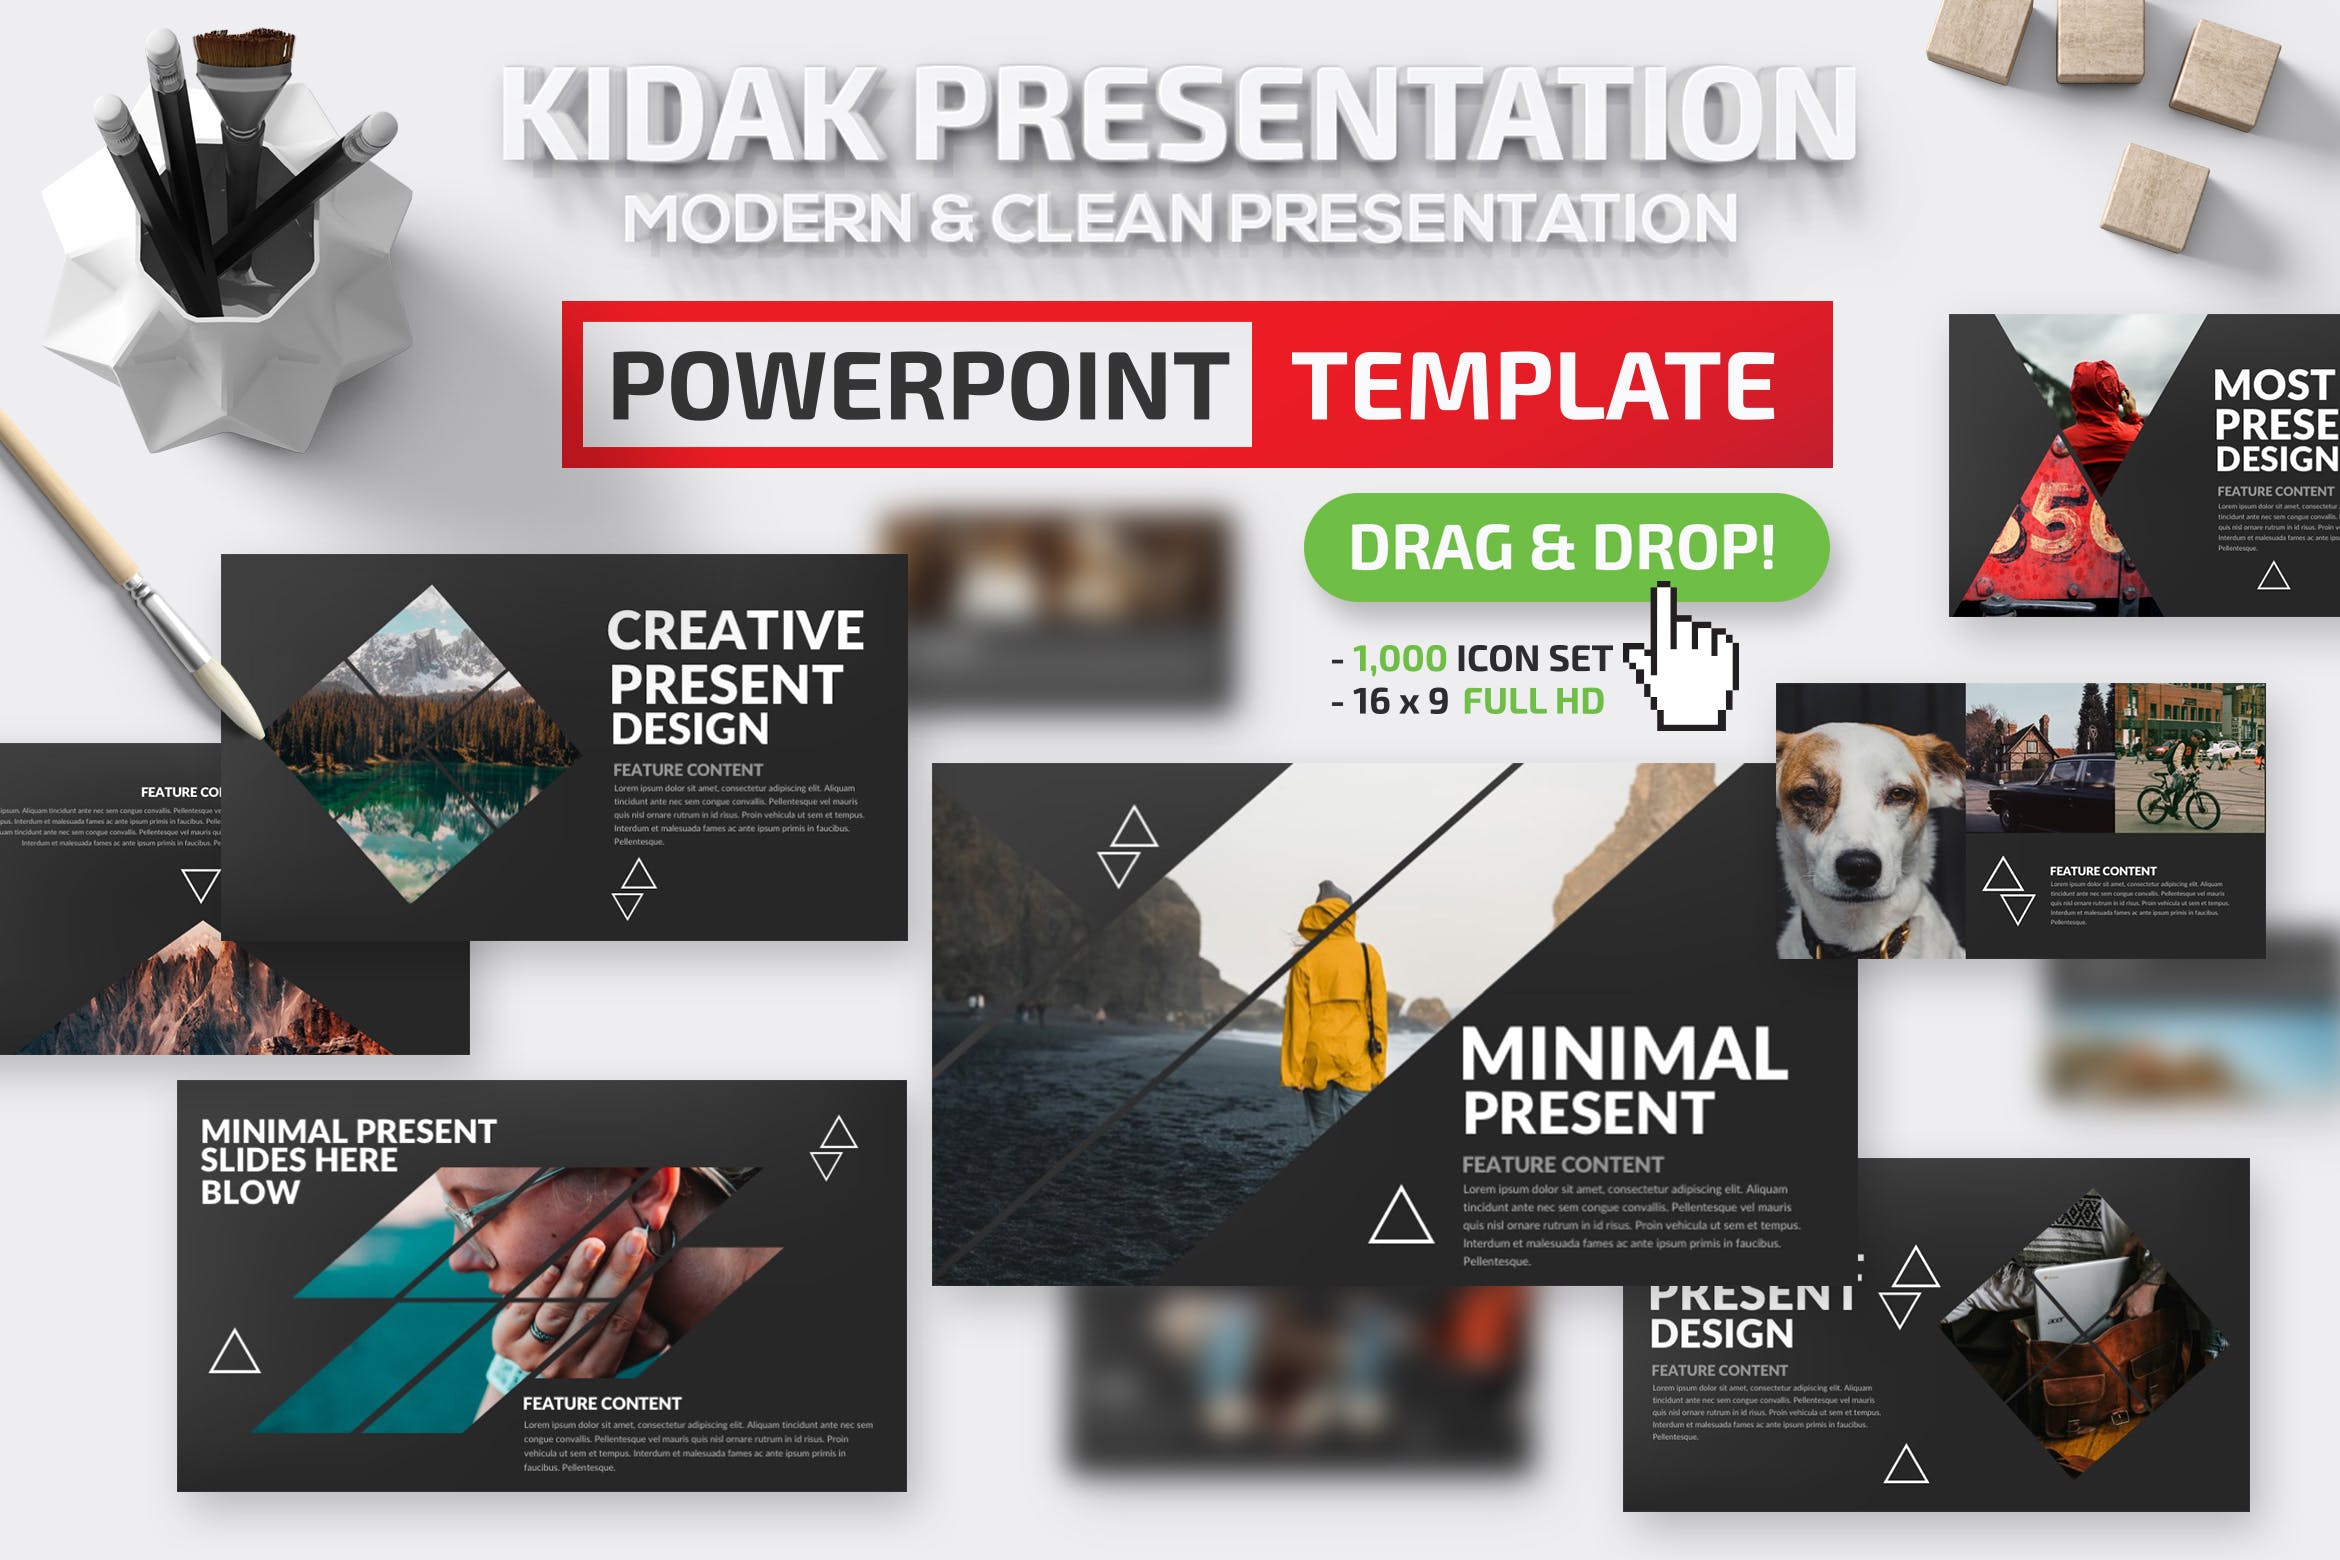 多图设计风格旅游/摄影行业适用的PPT模板 Kidak Powerpoint Template插图